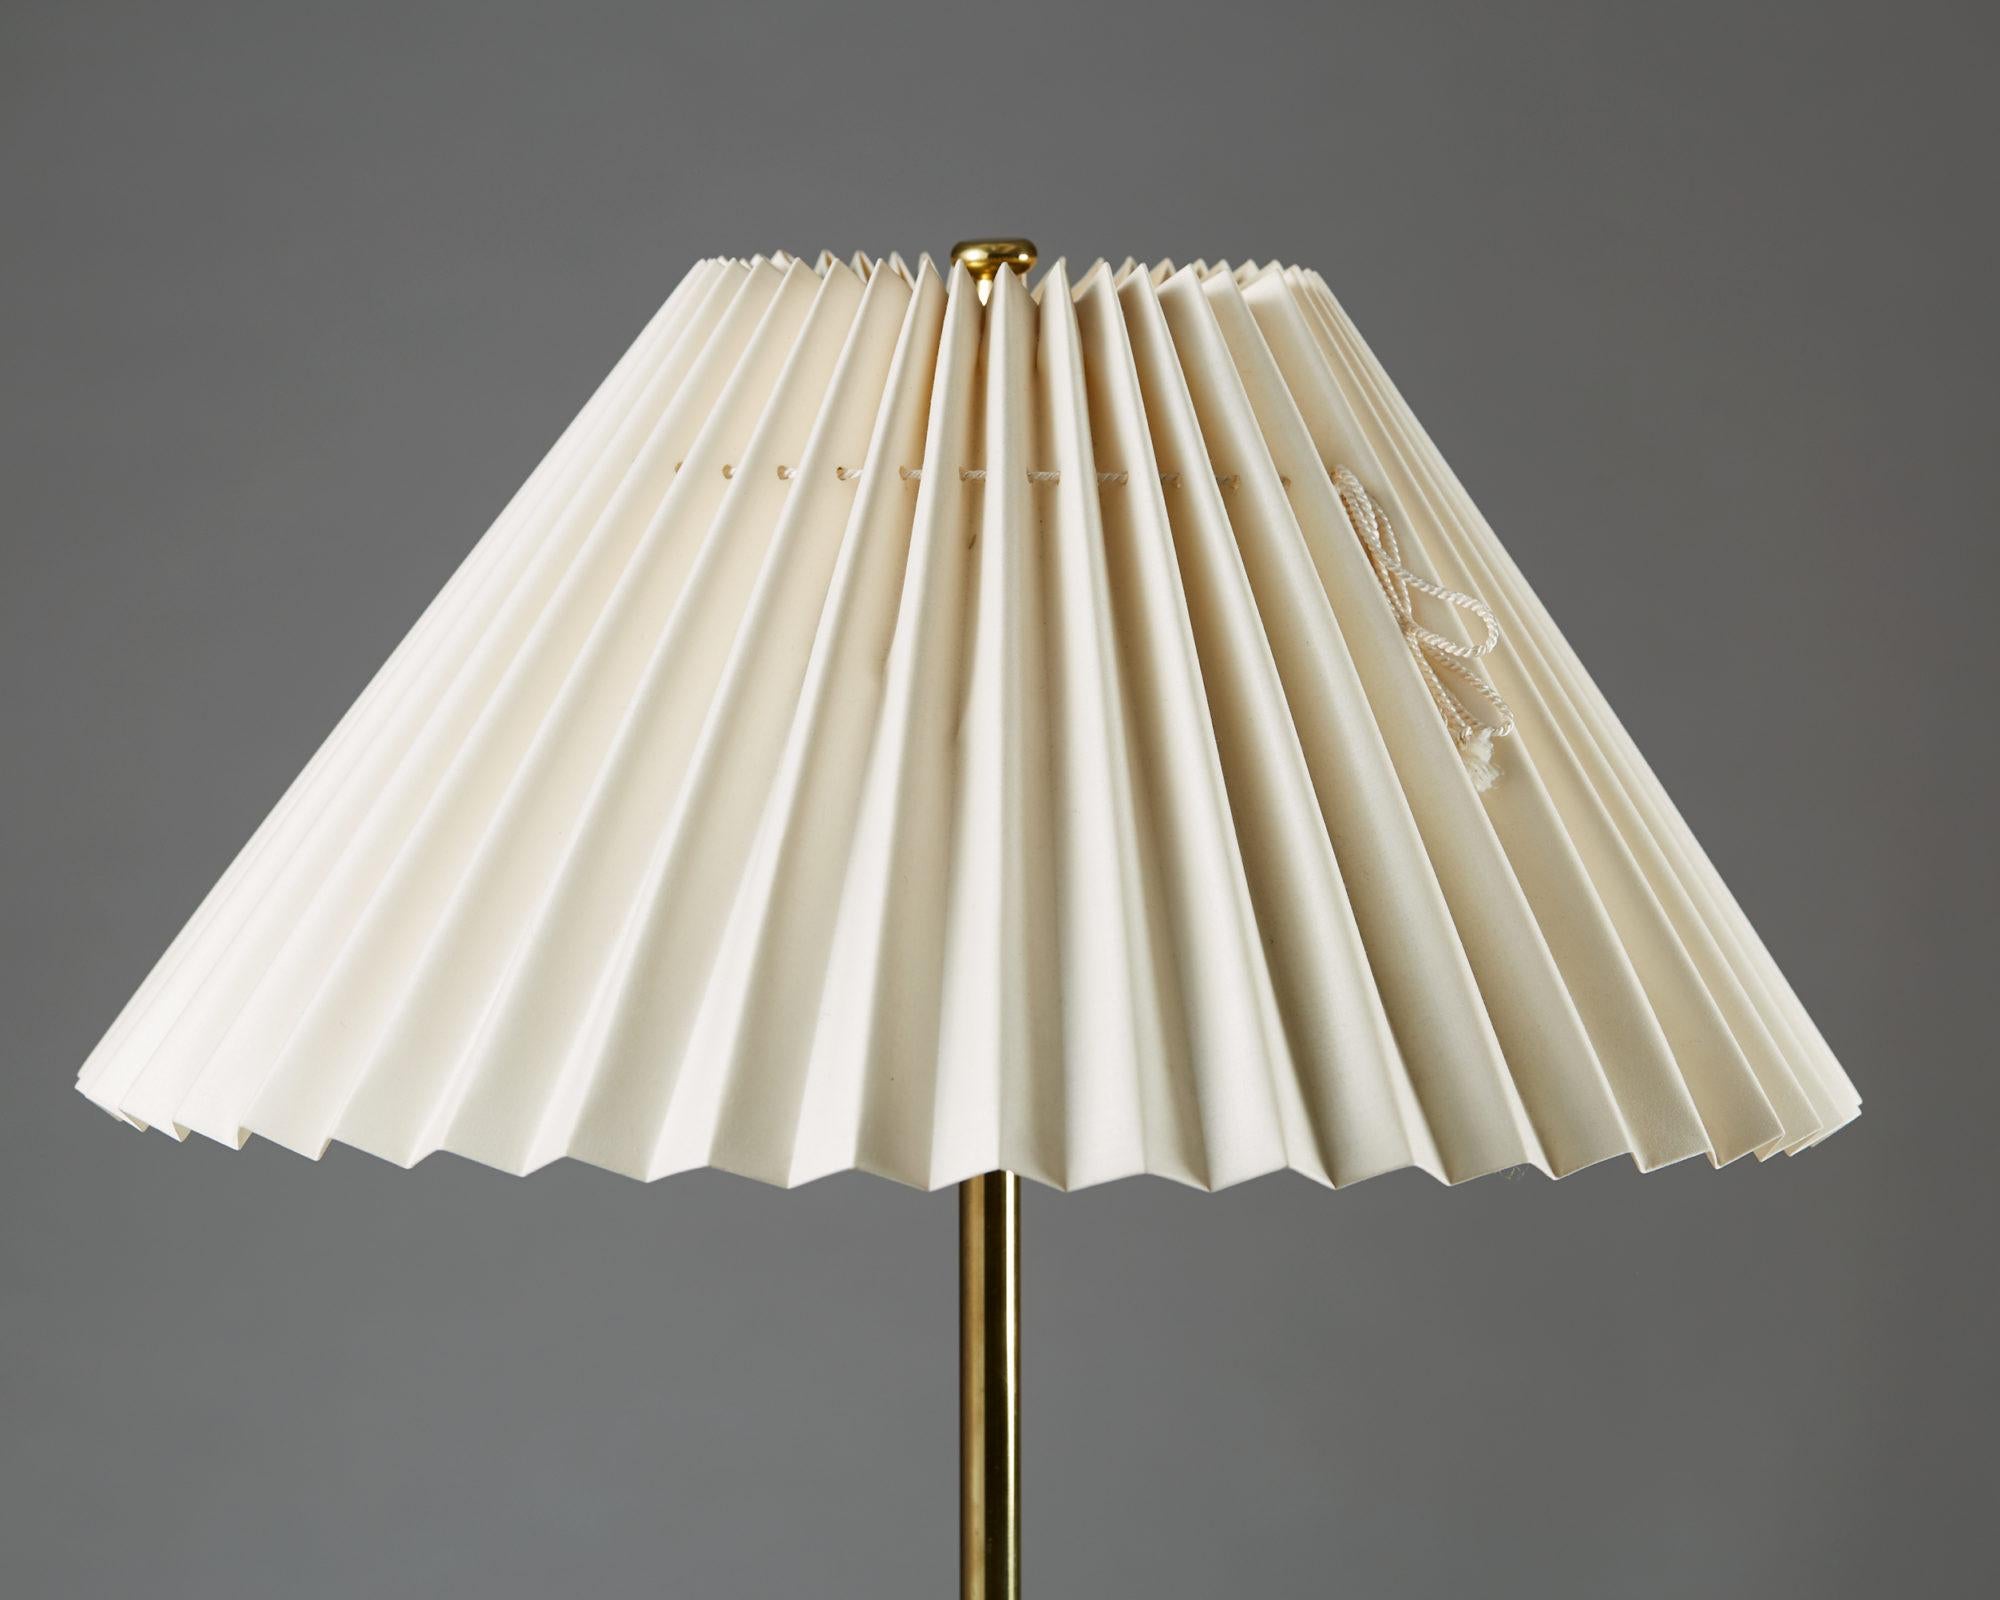 Scandinavian Modern Table Lamp Model 2467/2 Designed by Josef Frank for Svenskt Tenn, Sweden, 1938